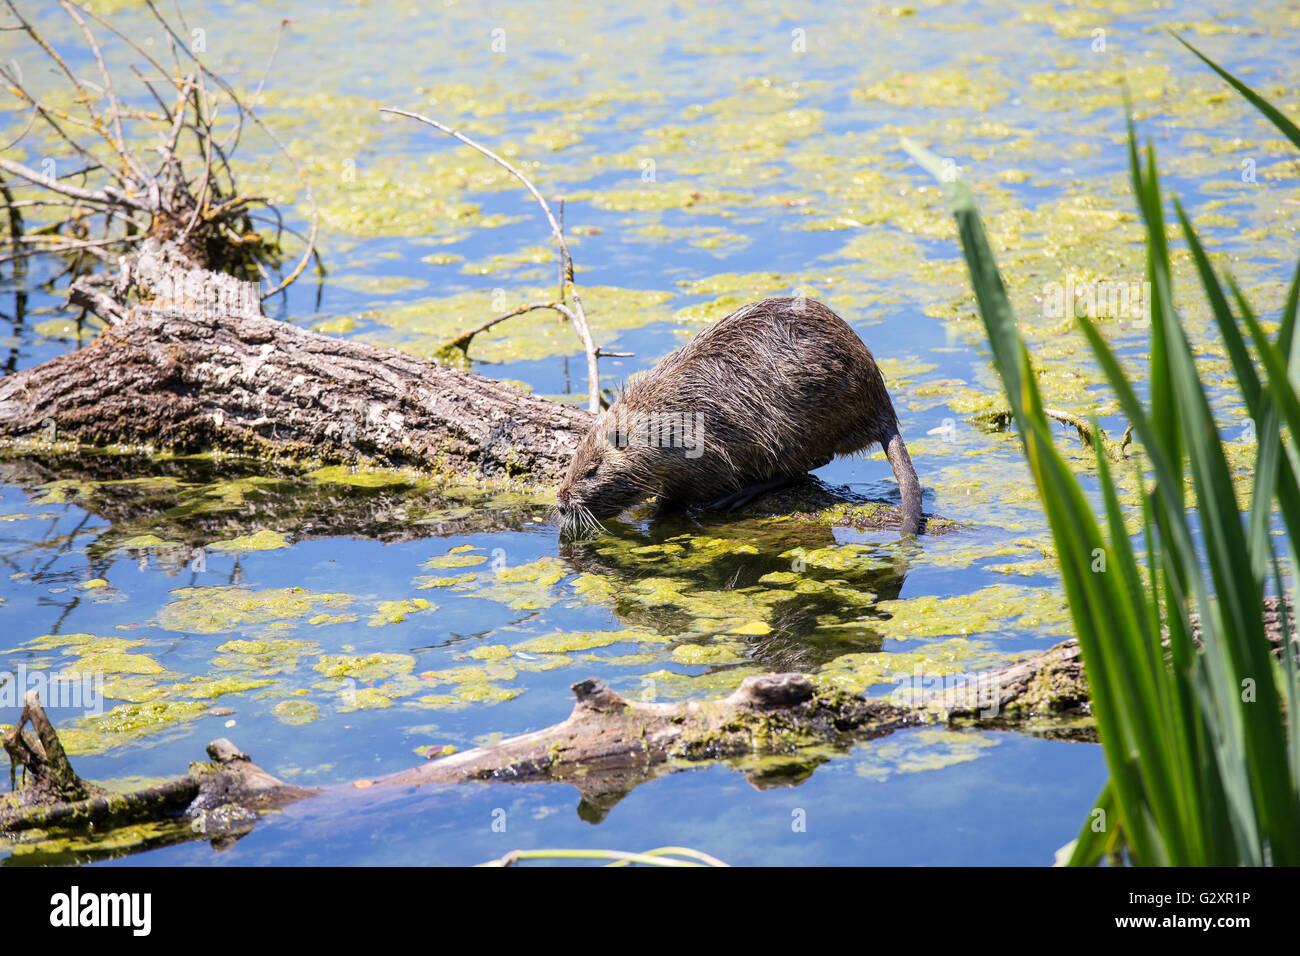 Ein Nutrias, Biber brummeln, auch bekannt als Fluss Ratte oder Nutria stehend auf einem Baumstamm auf dem Wasser in einem Teich schwimmen Stockfoto